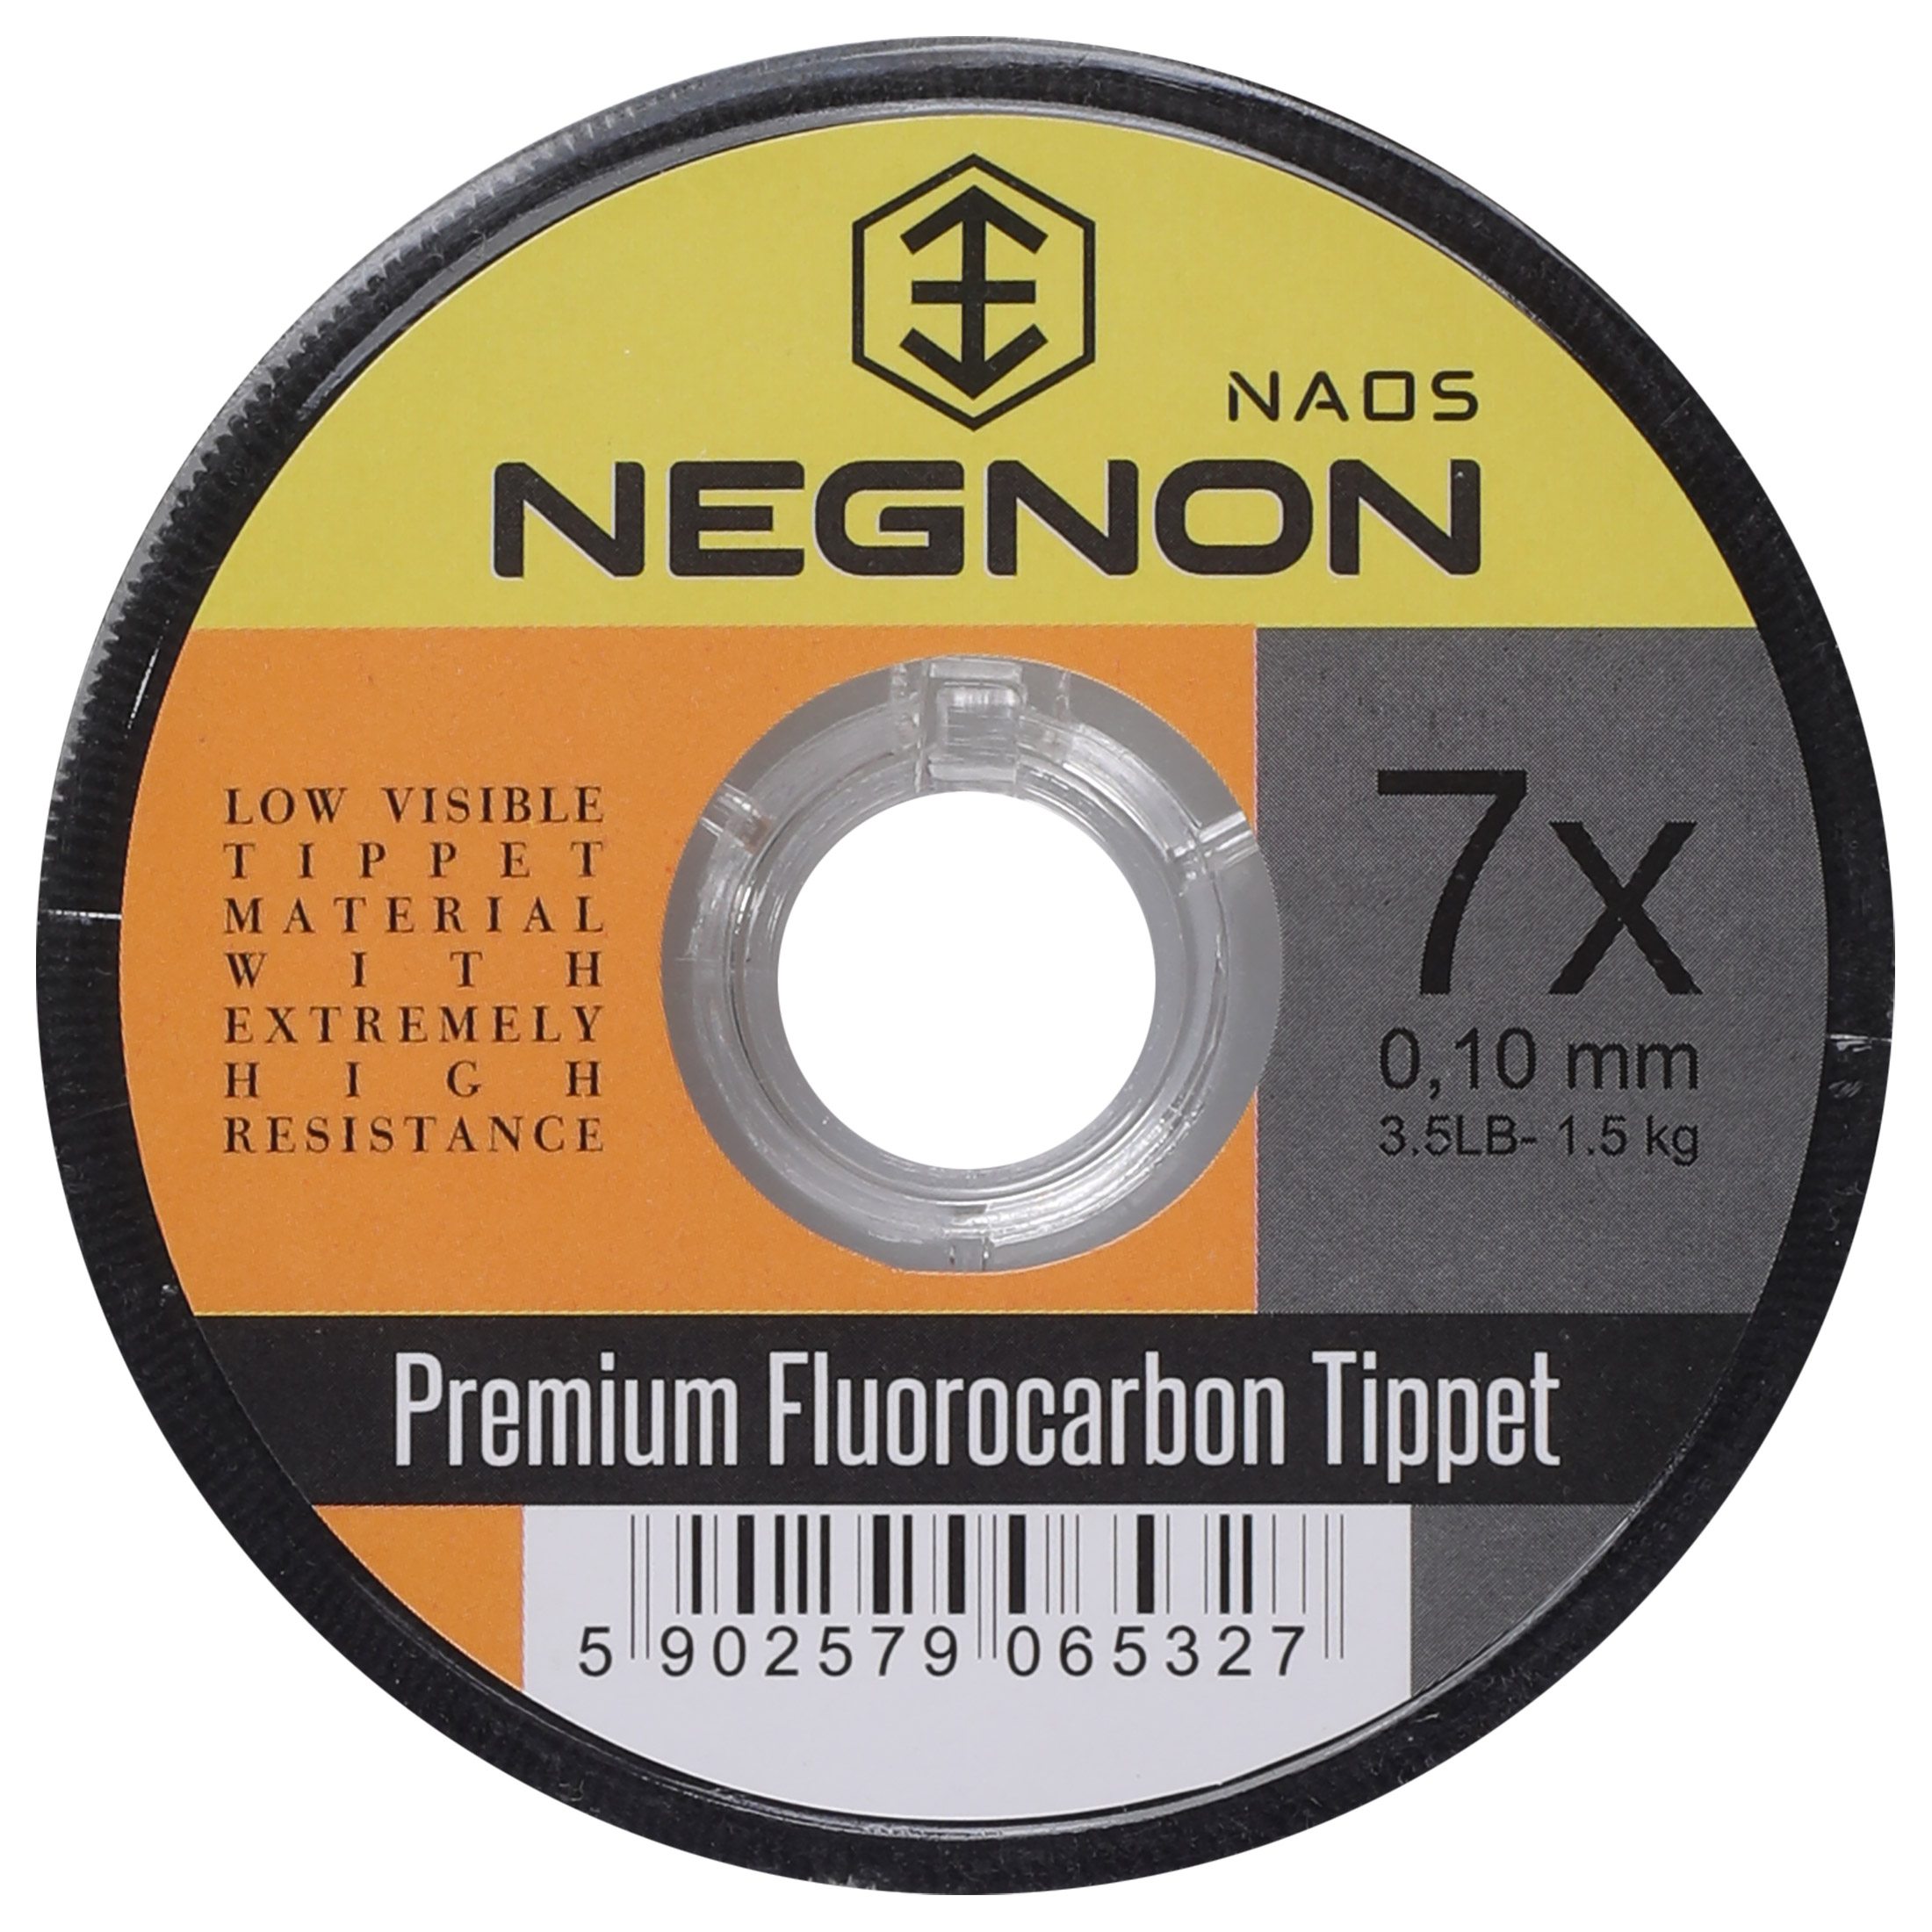 Negnon Naos Fluorocarbon Tippet